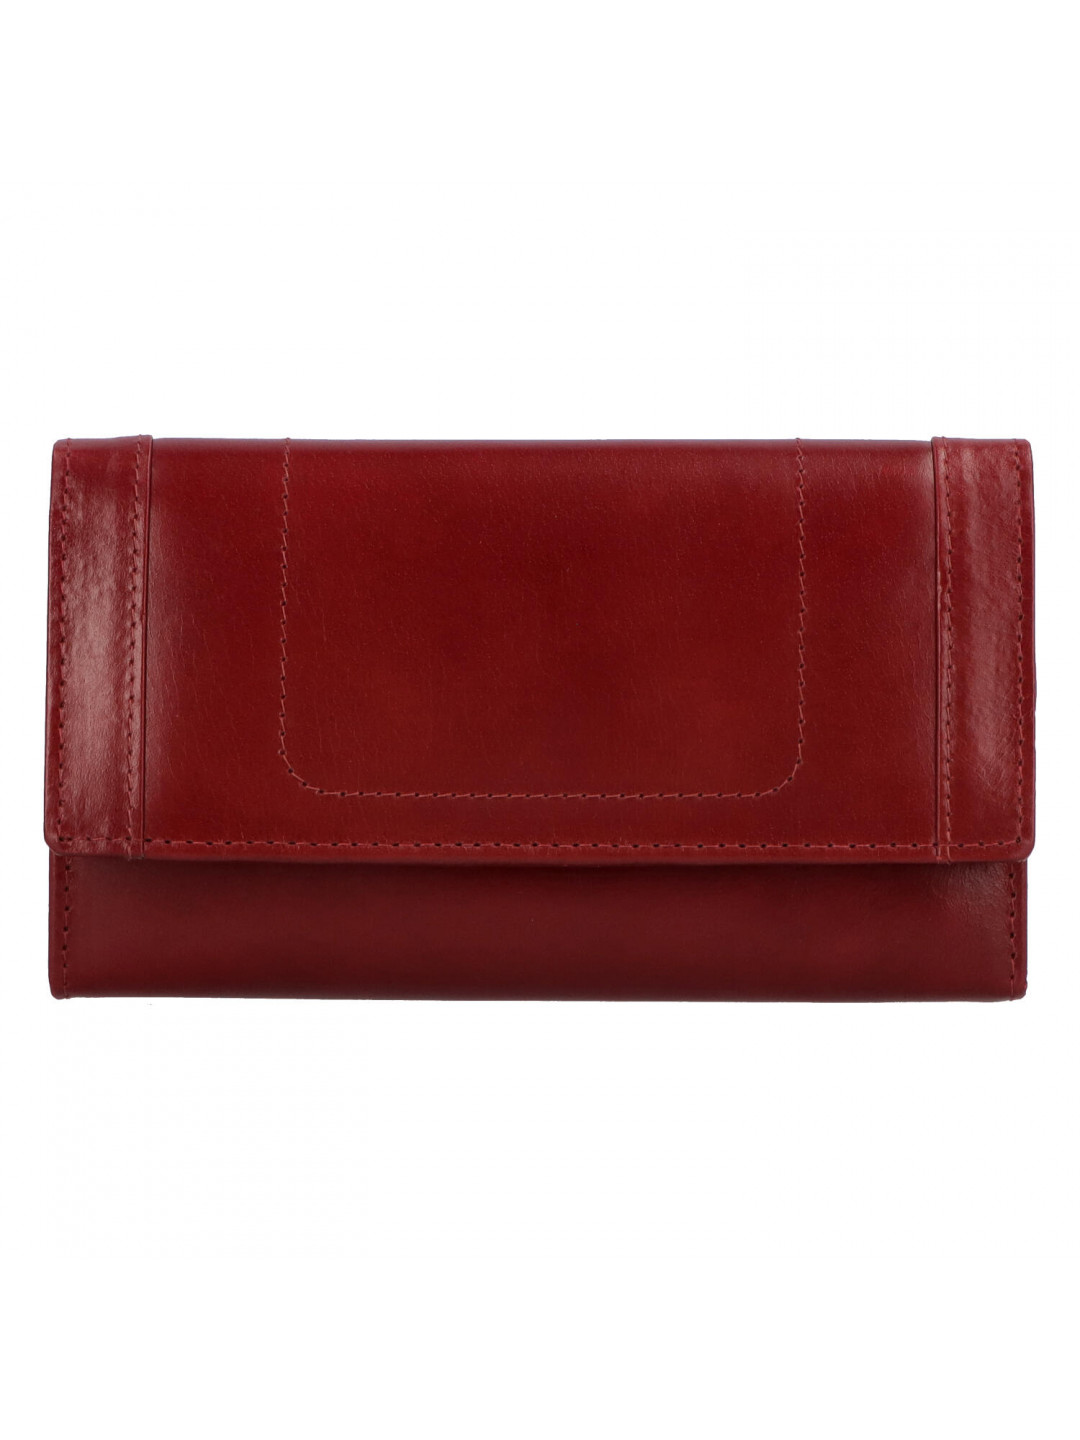 Kožená peněženka tmavě červená – Tomas Mayana